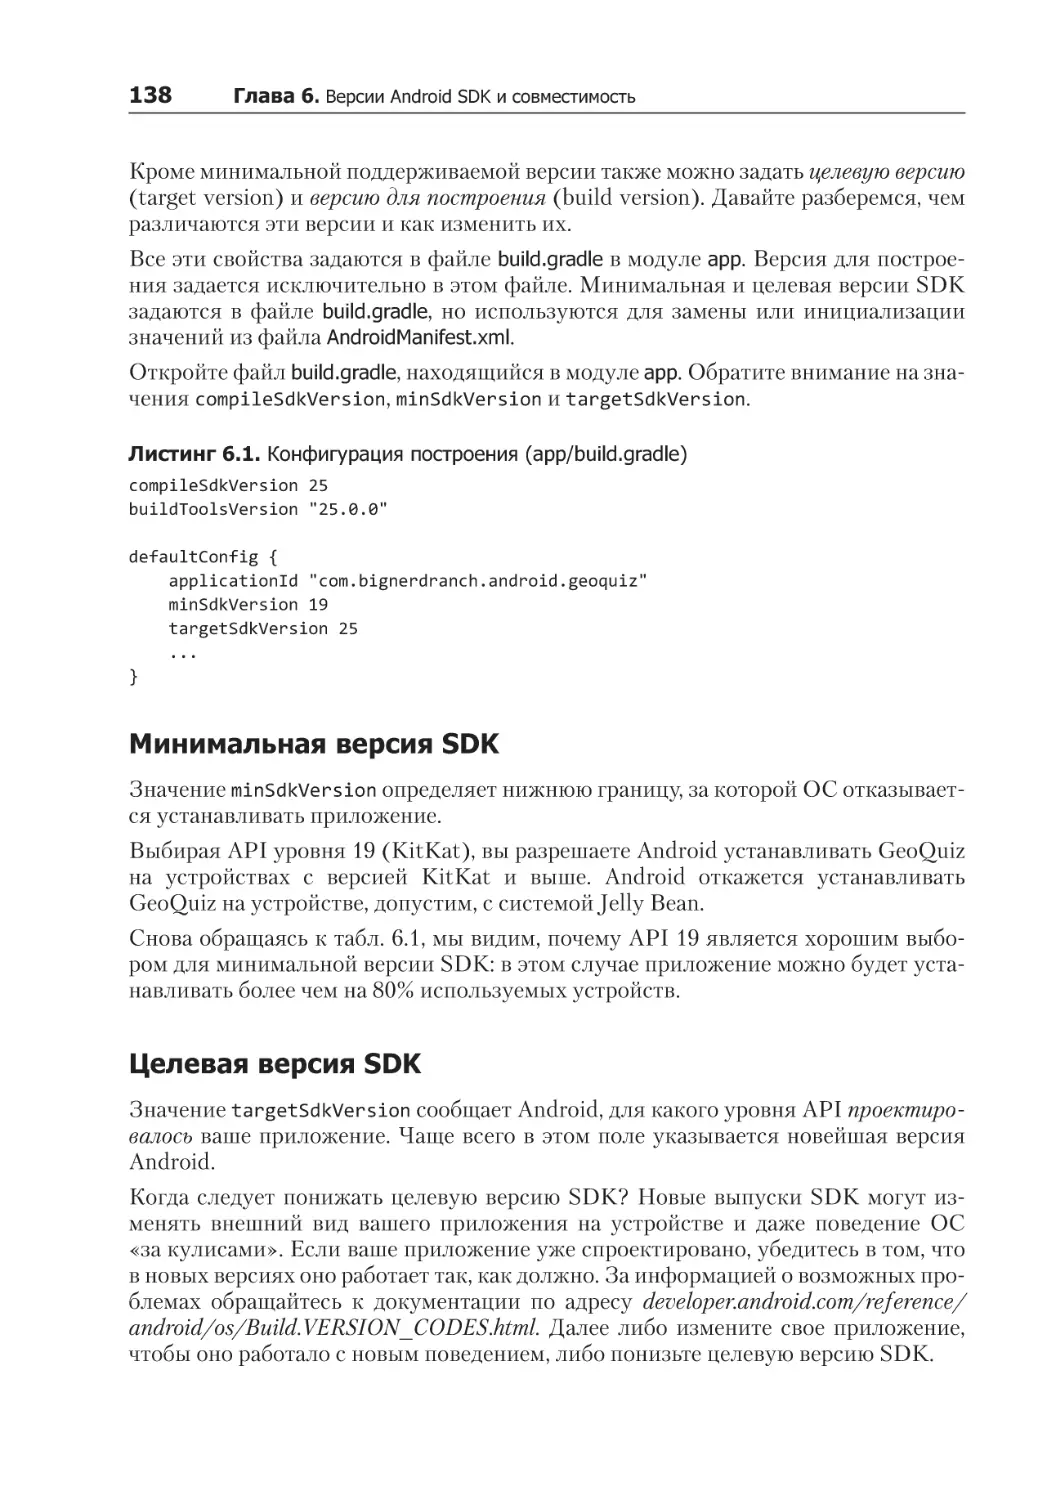 Минимальная версия SDK
Целевая версия SDK